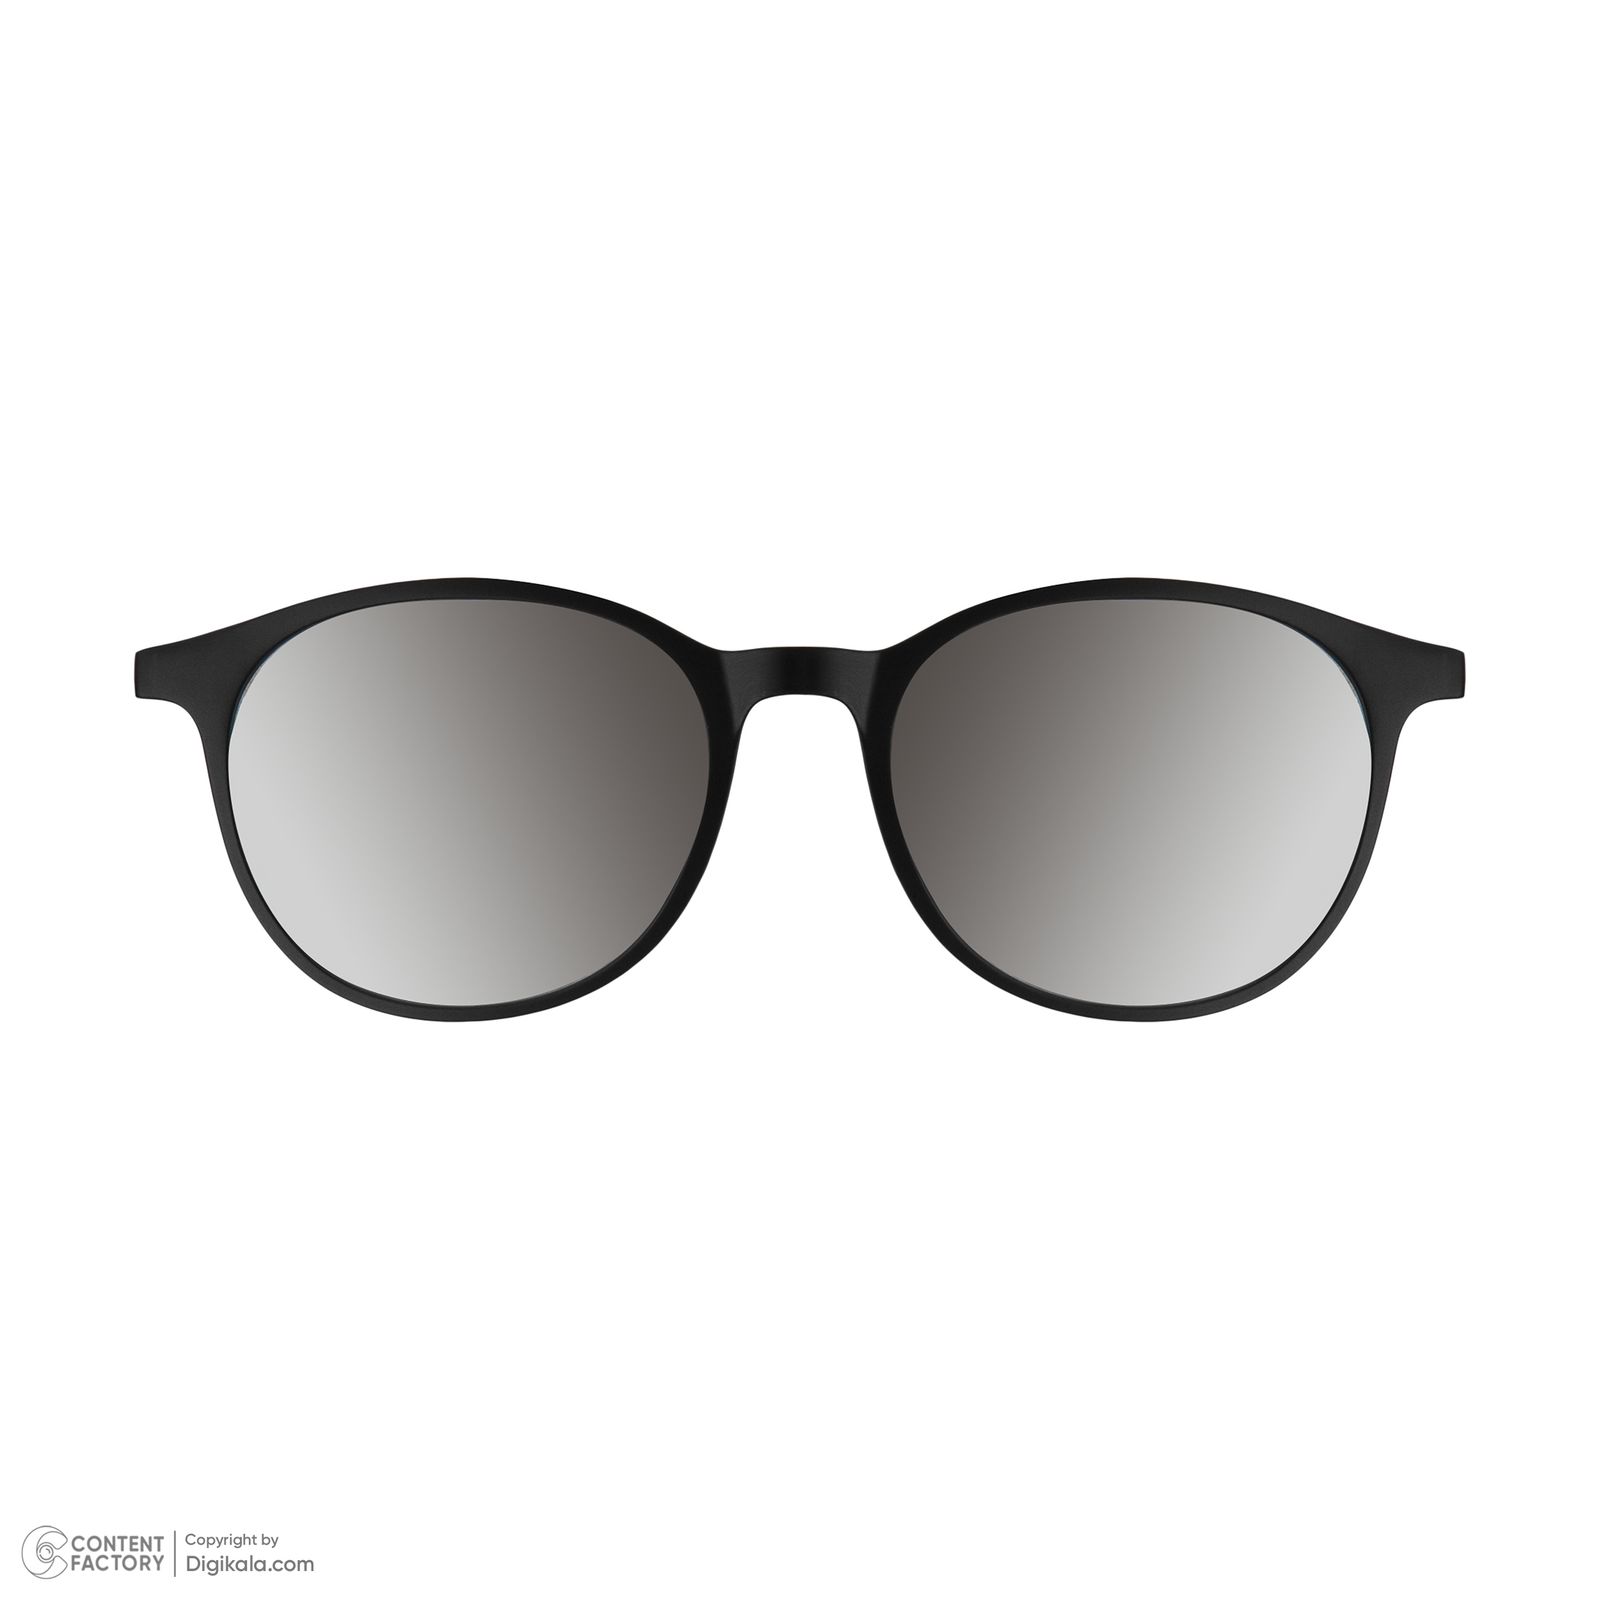 فریم عینک طبی دونیک مدل tr2245-c2 به همراه کاور آفتابی -  - 10